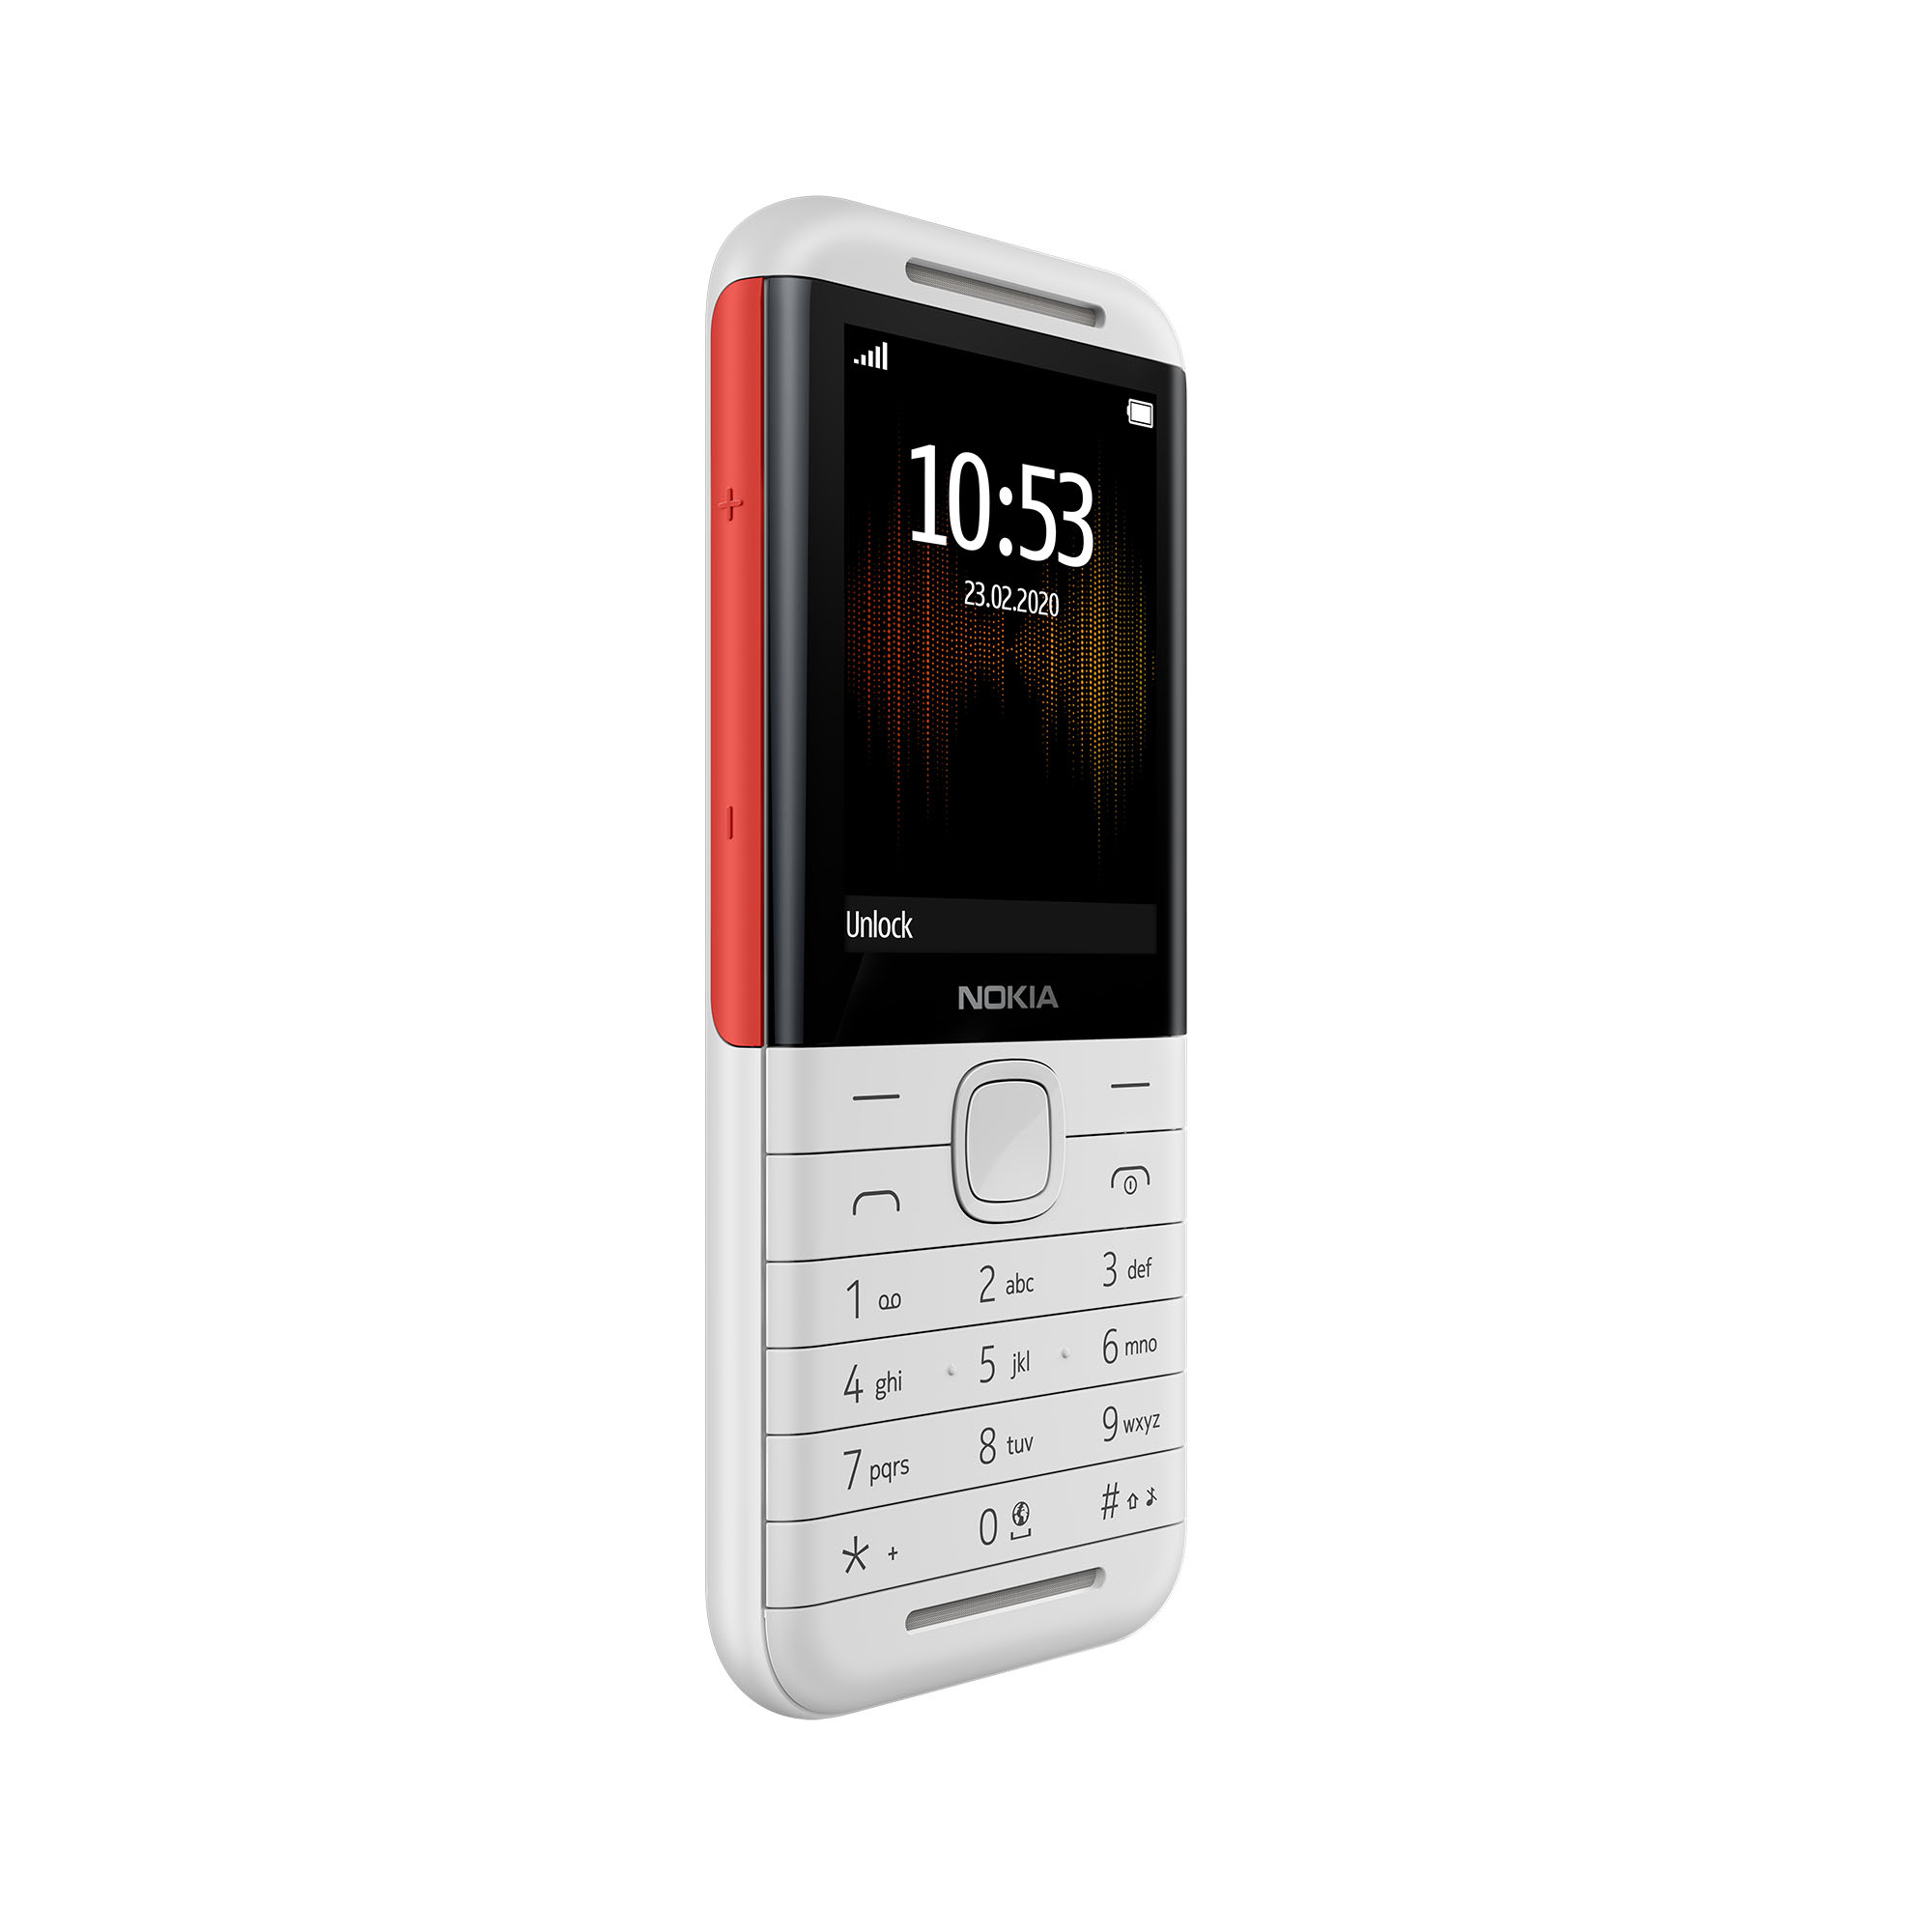 Nokia 5310 chính thức lên kệ tại thị trường Việt Nam với giá 989,000 VND